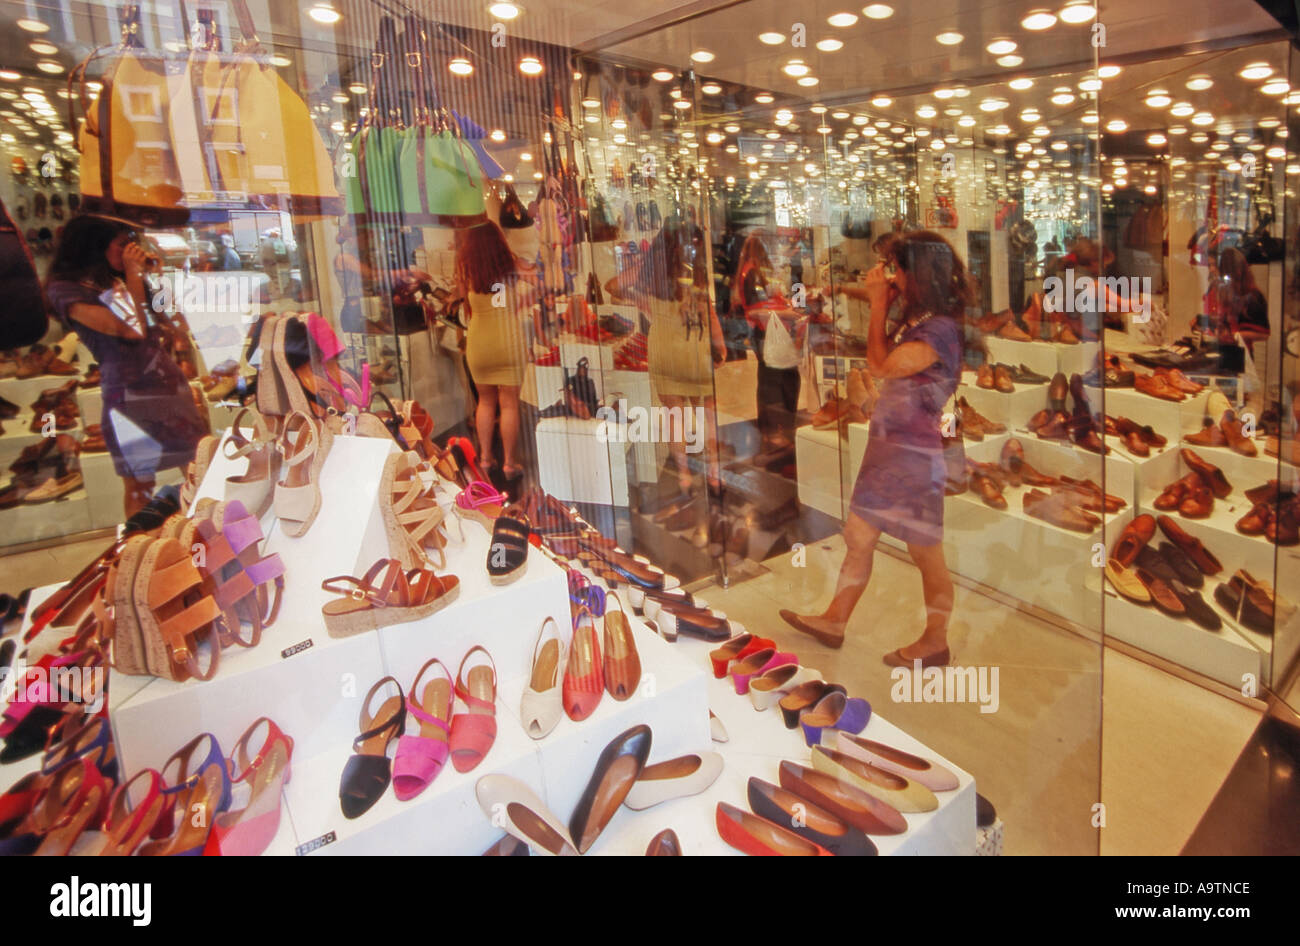 Shoe shopping rome immagini e fotografie stock ad alta risoluzione - Alamy